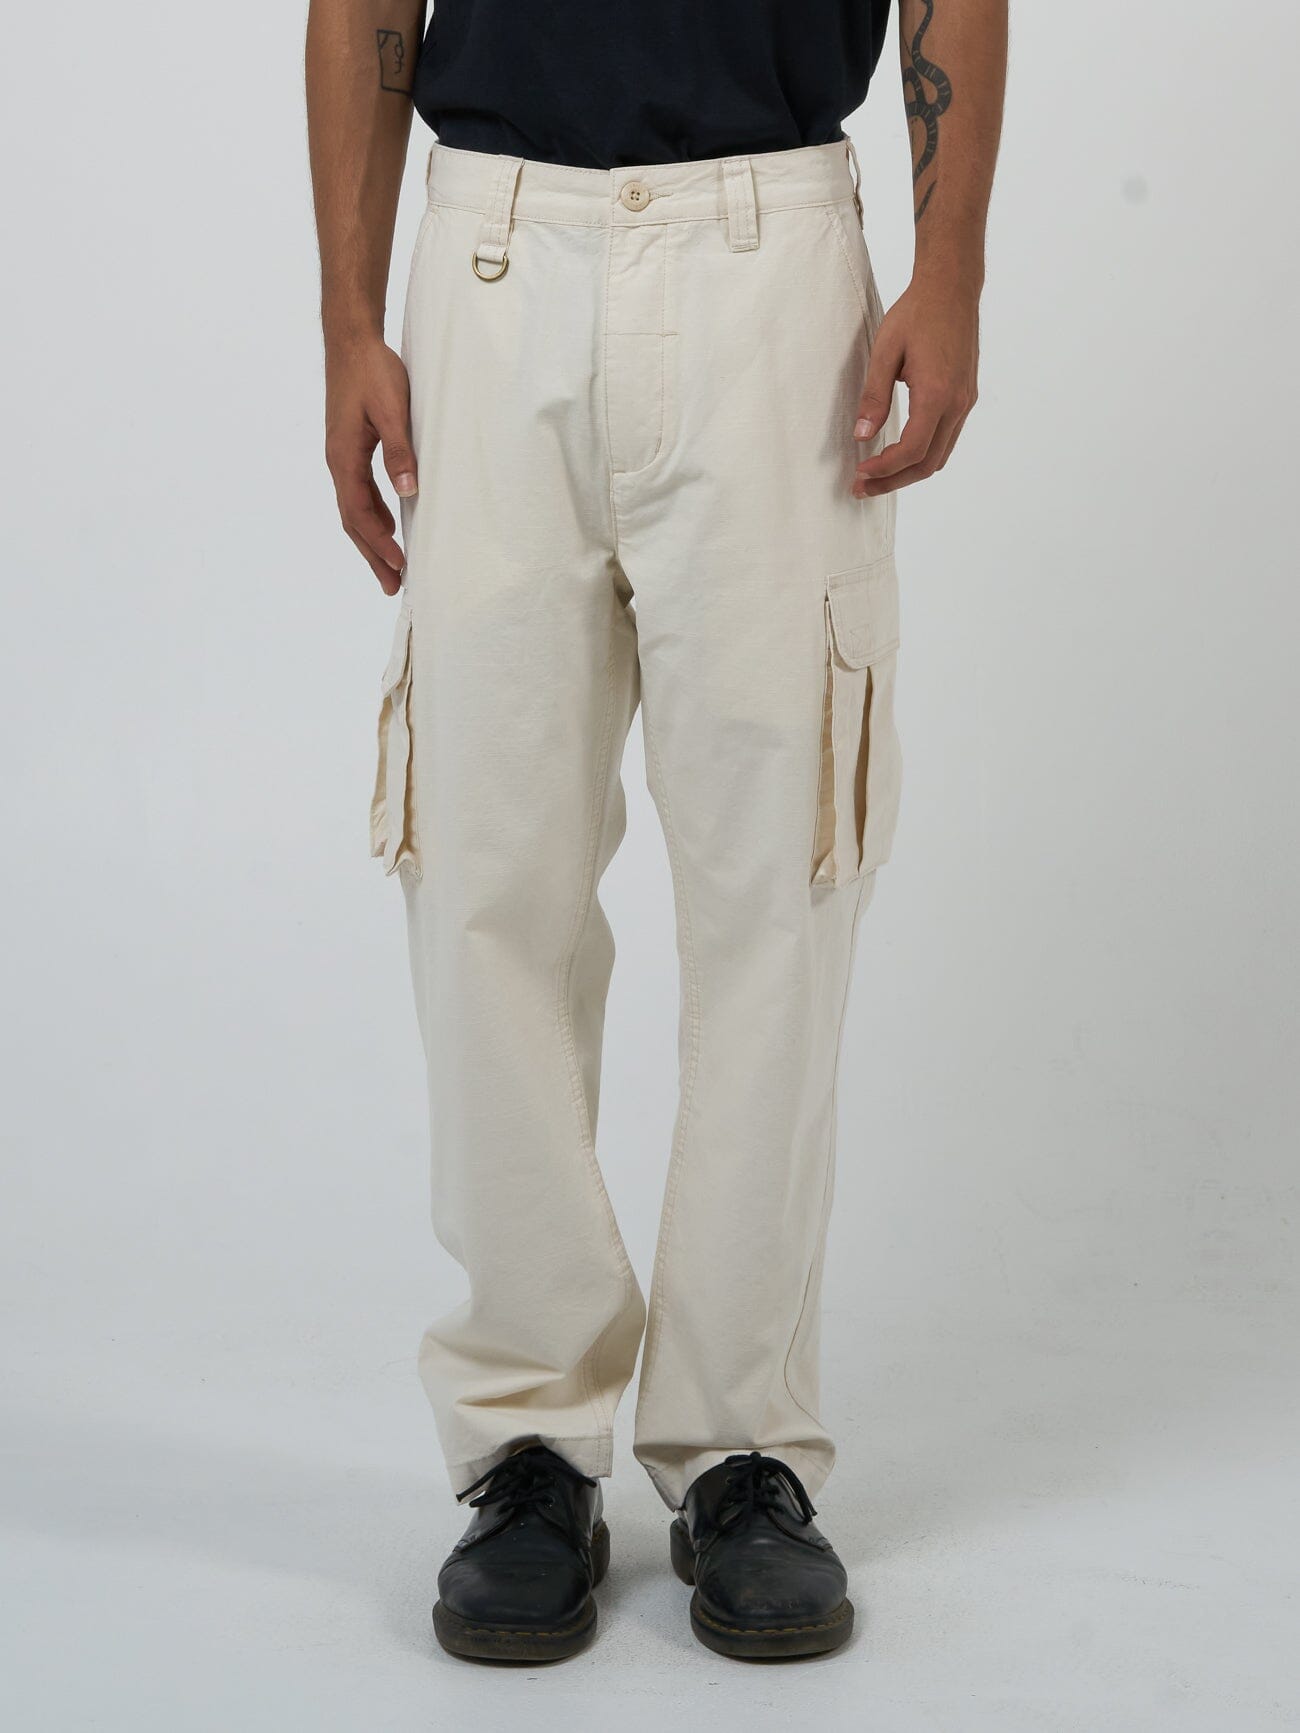 Slacker Union Cargo Pant - Heritage White